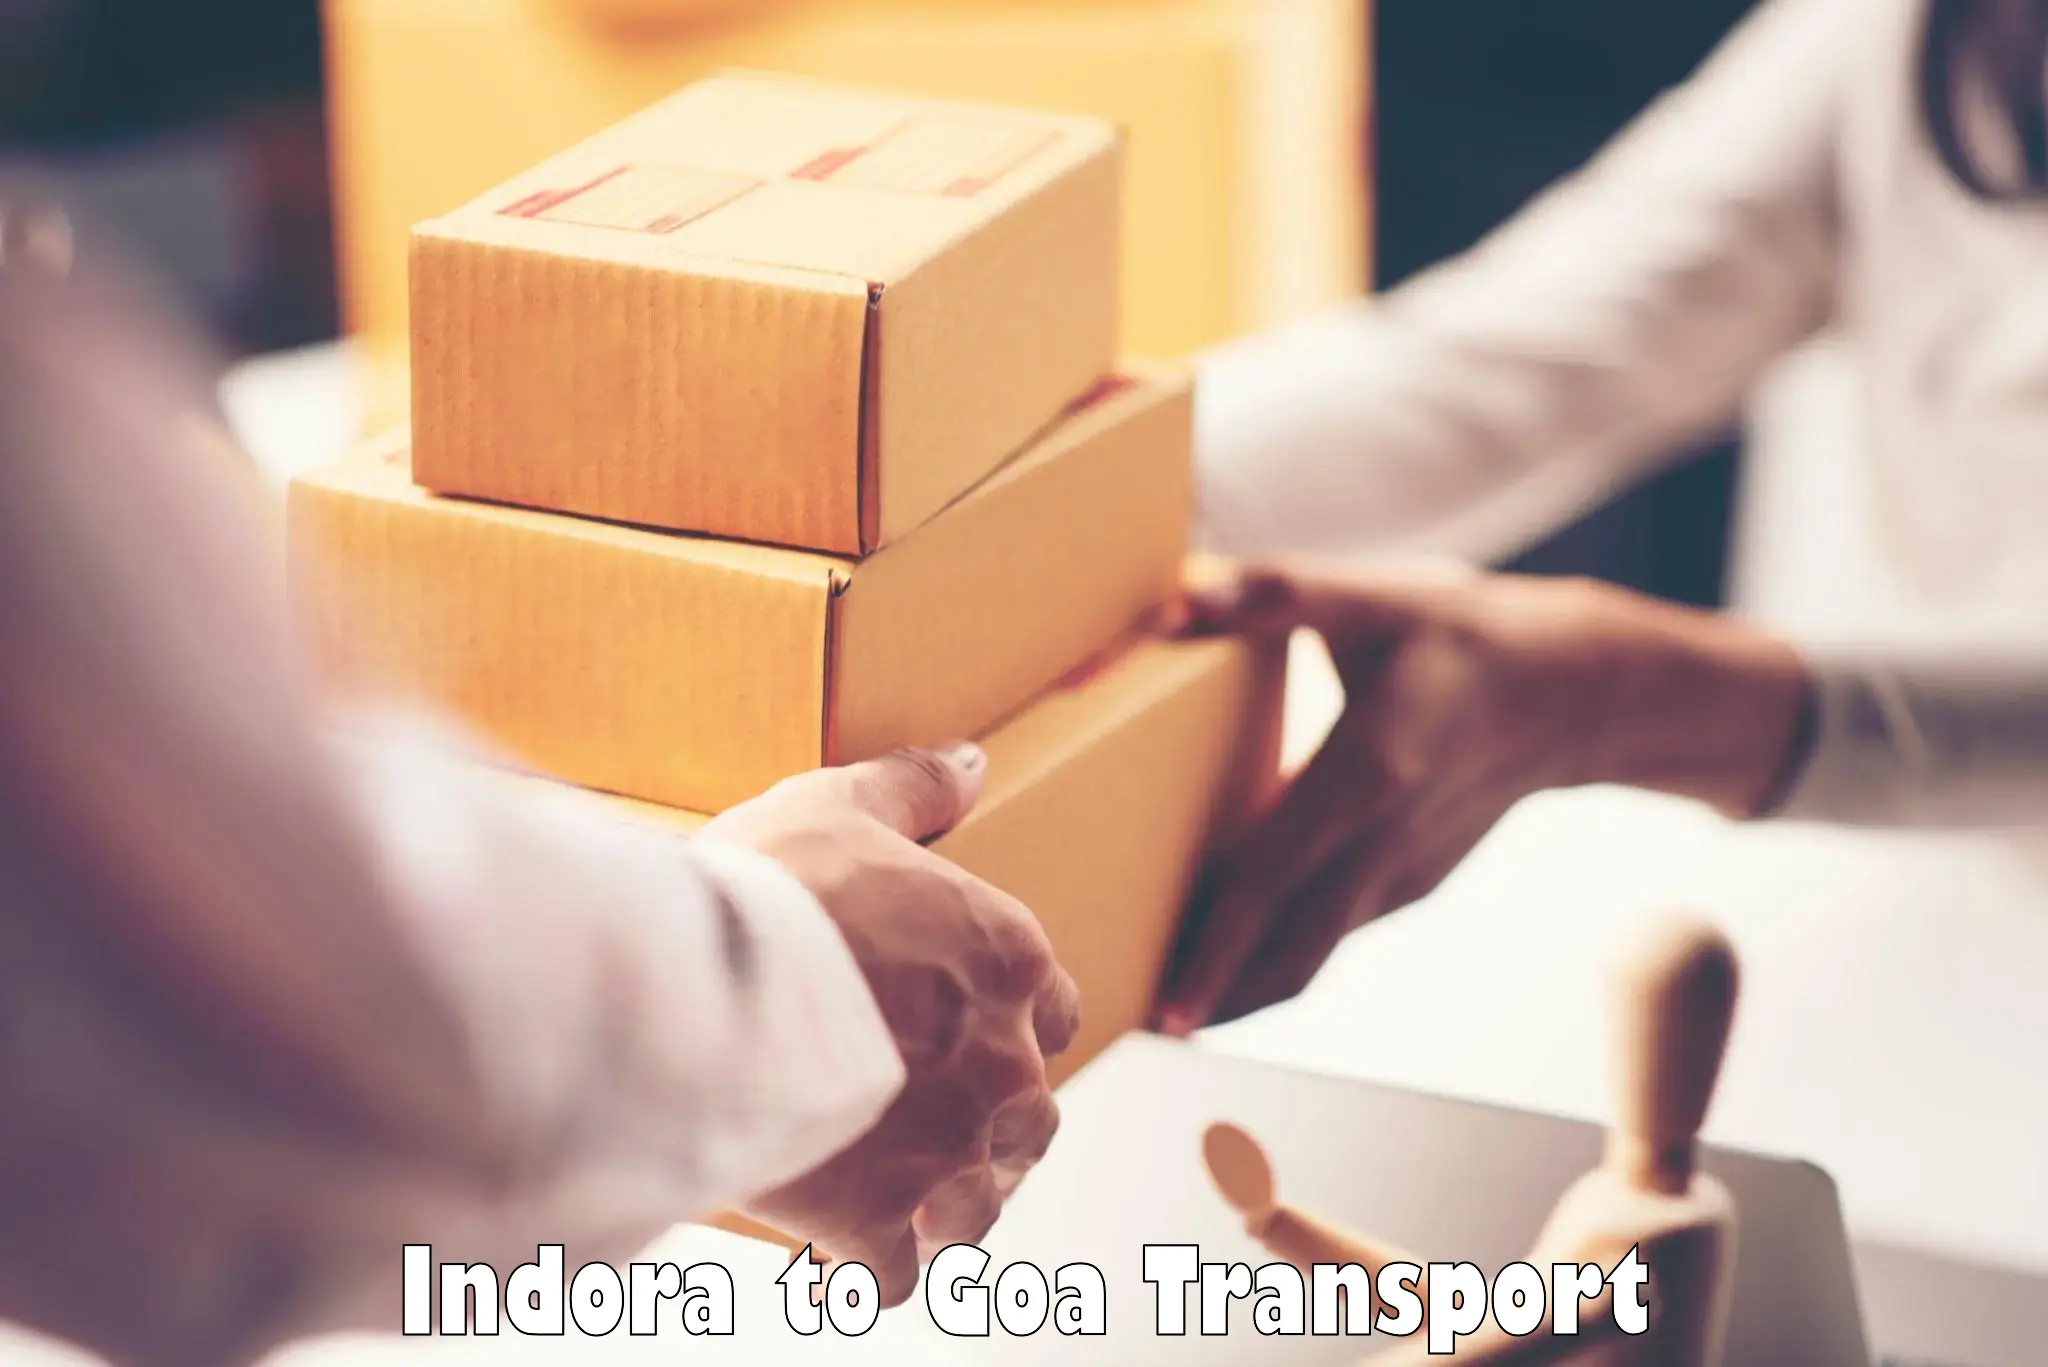 Transport in sharing Indora to Bicholim